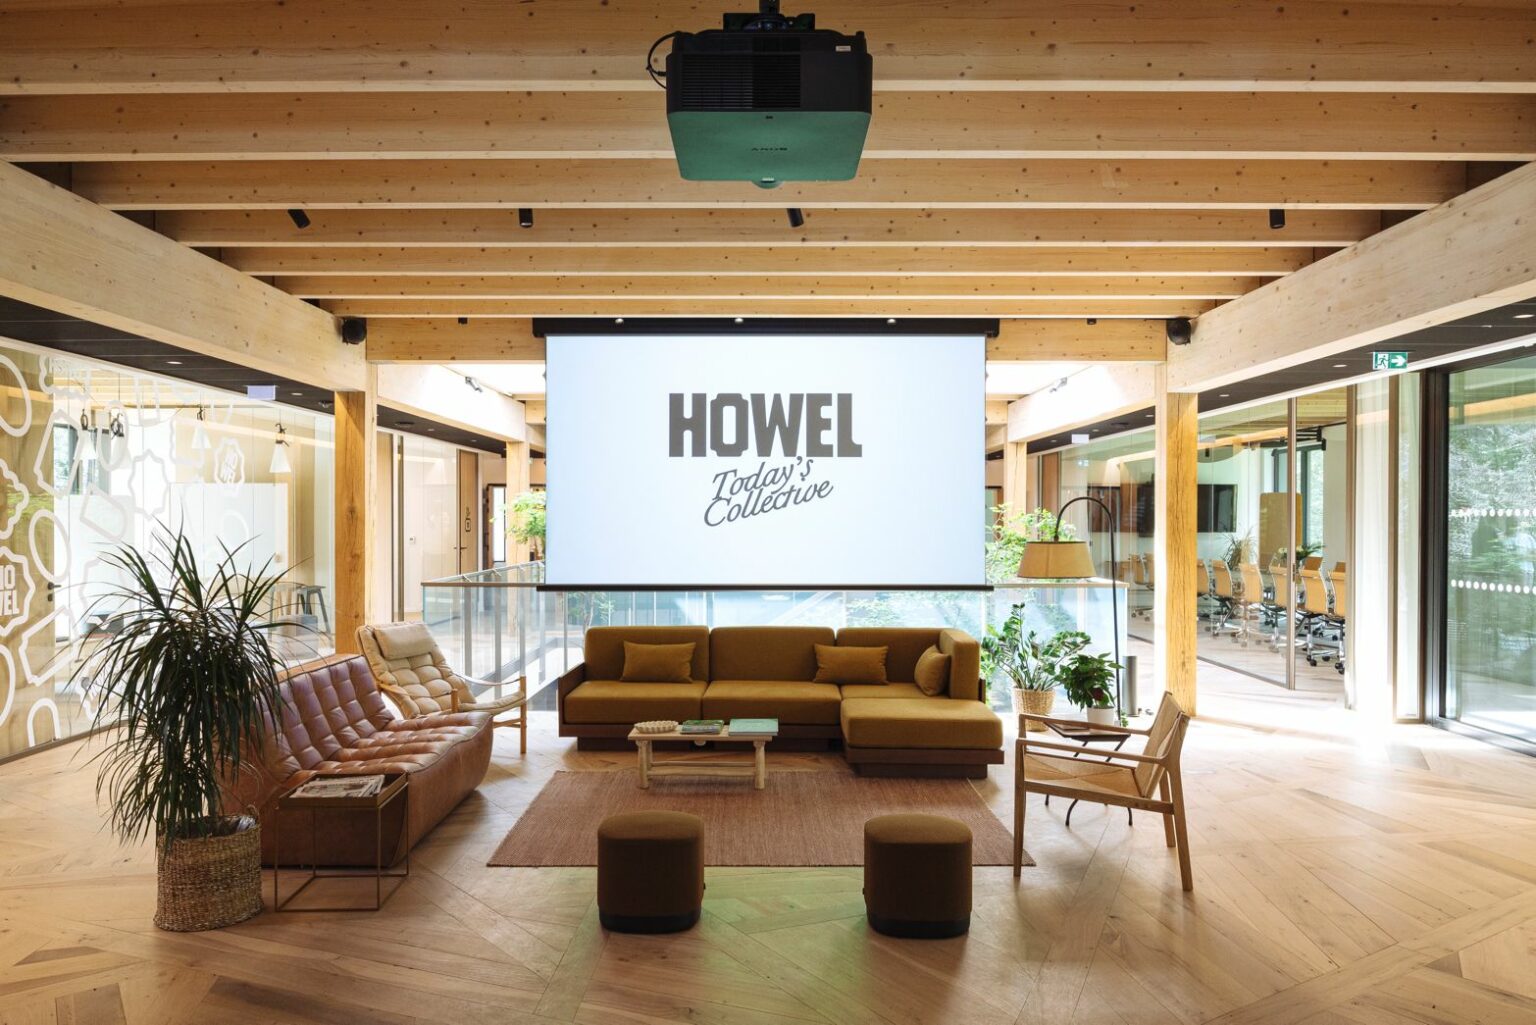 HOWEL et La Maison des Bienheureux, un projet vertueux alliant modernité et patrimoine local.